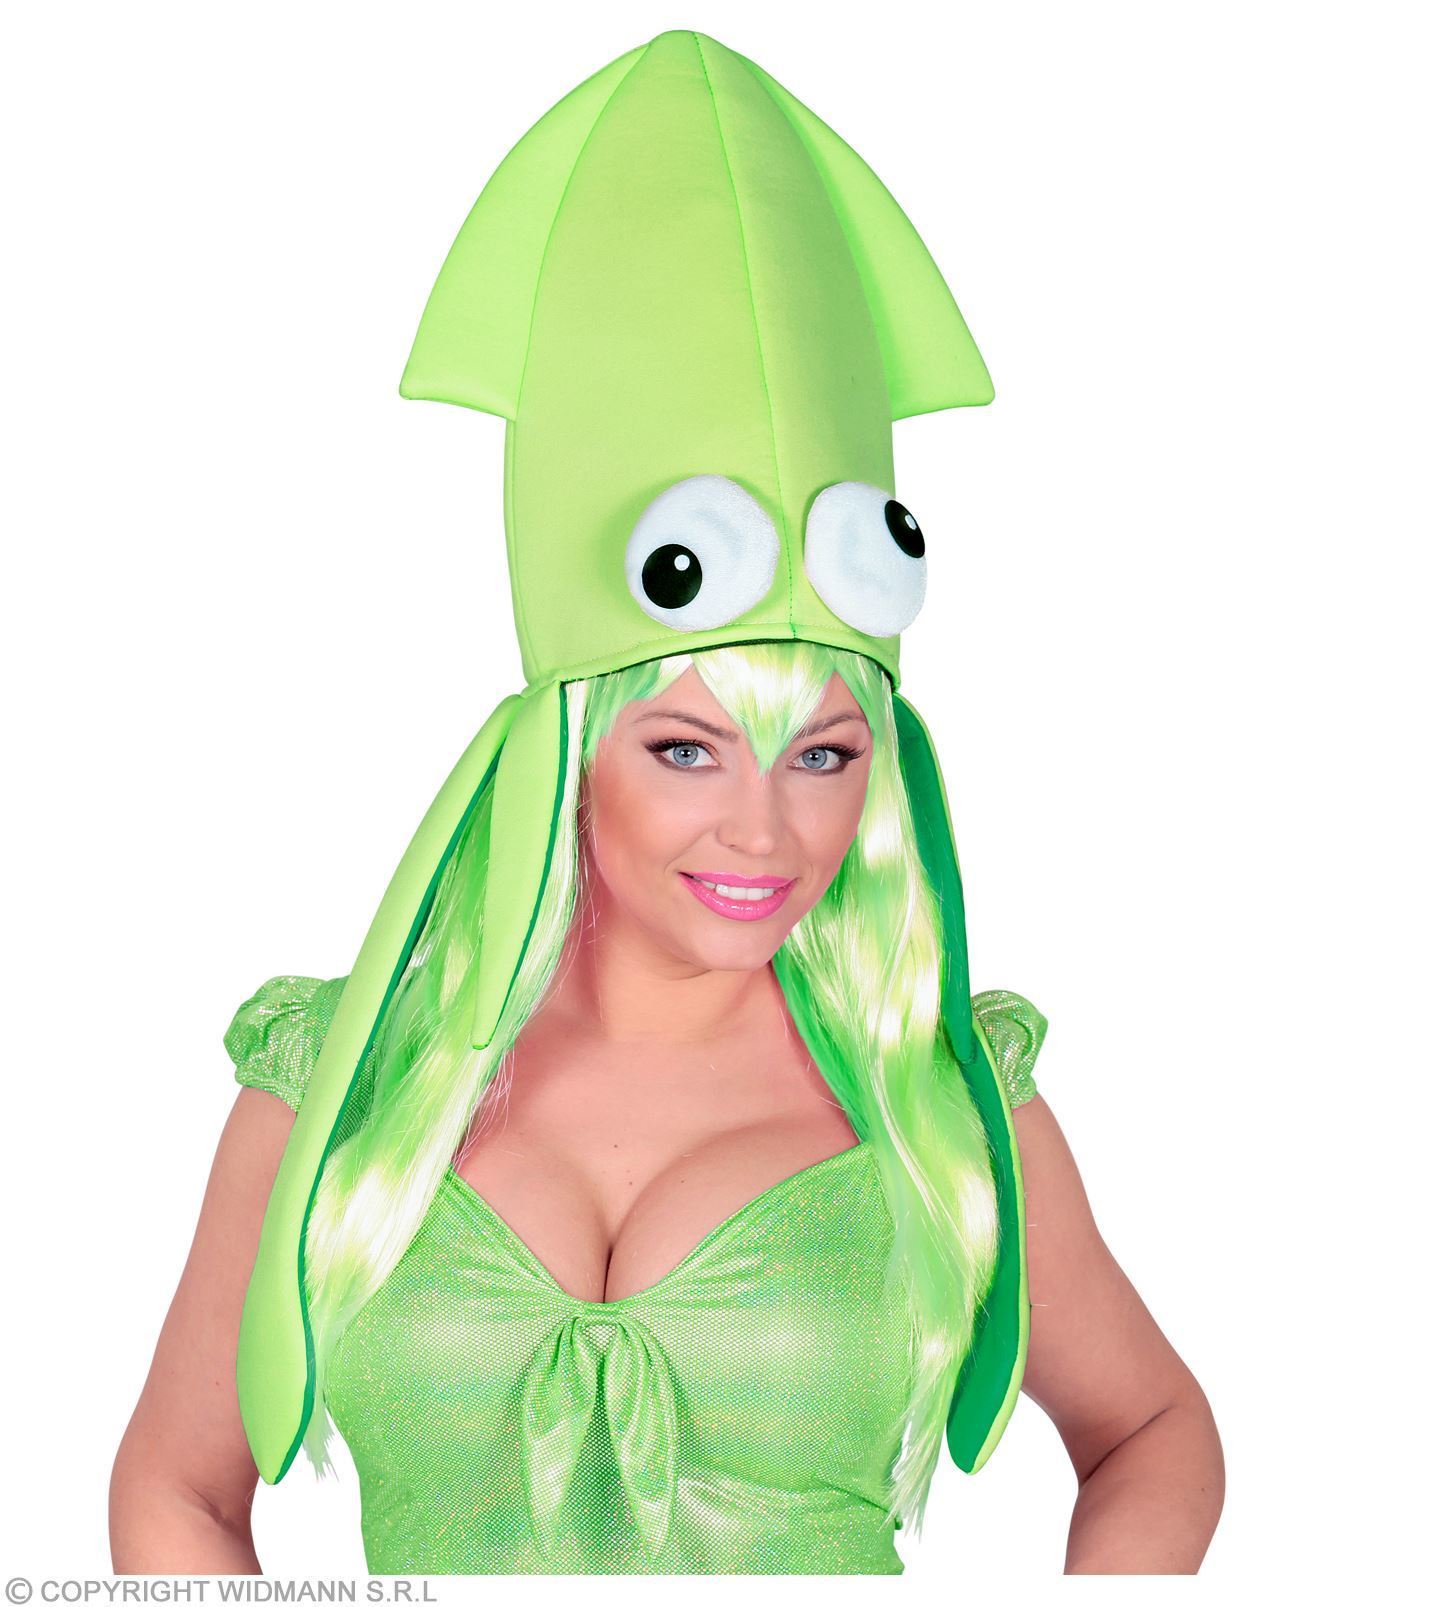 inktvis hoed, groen. Groene inktvis hoeden met lange tentakels